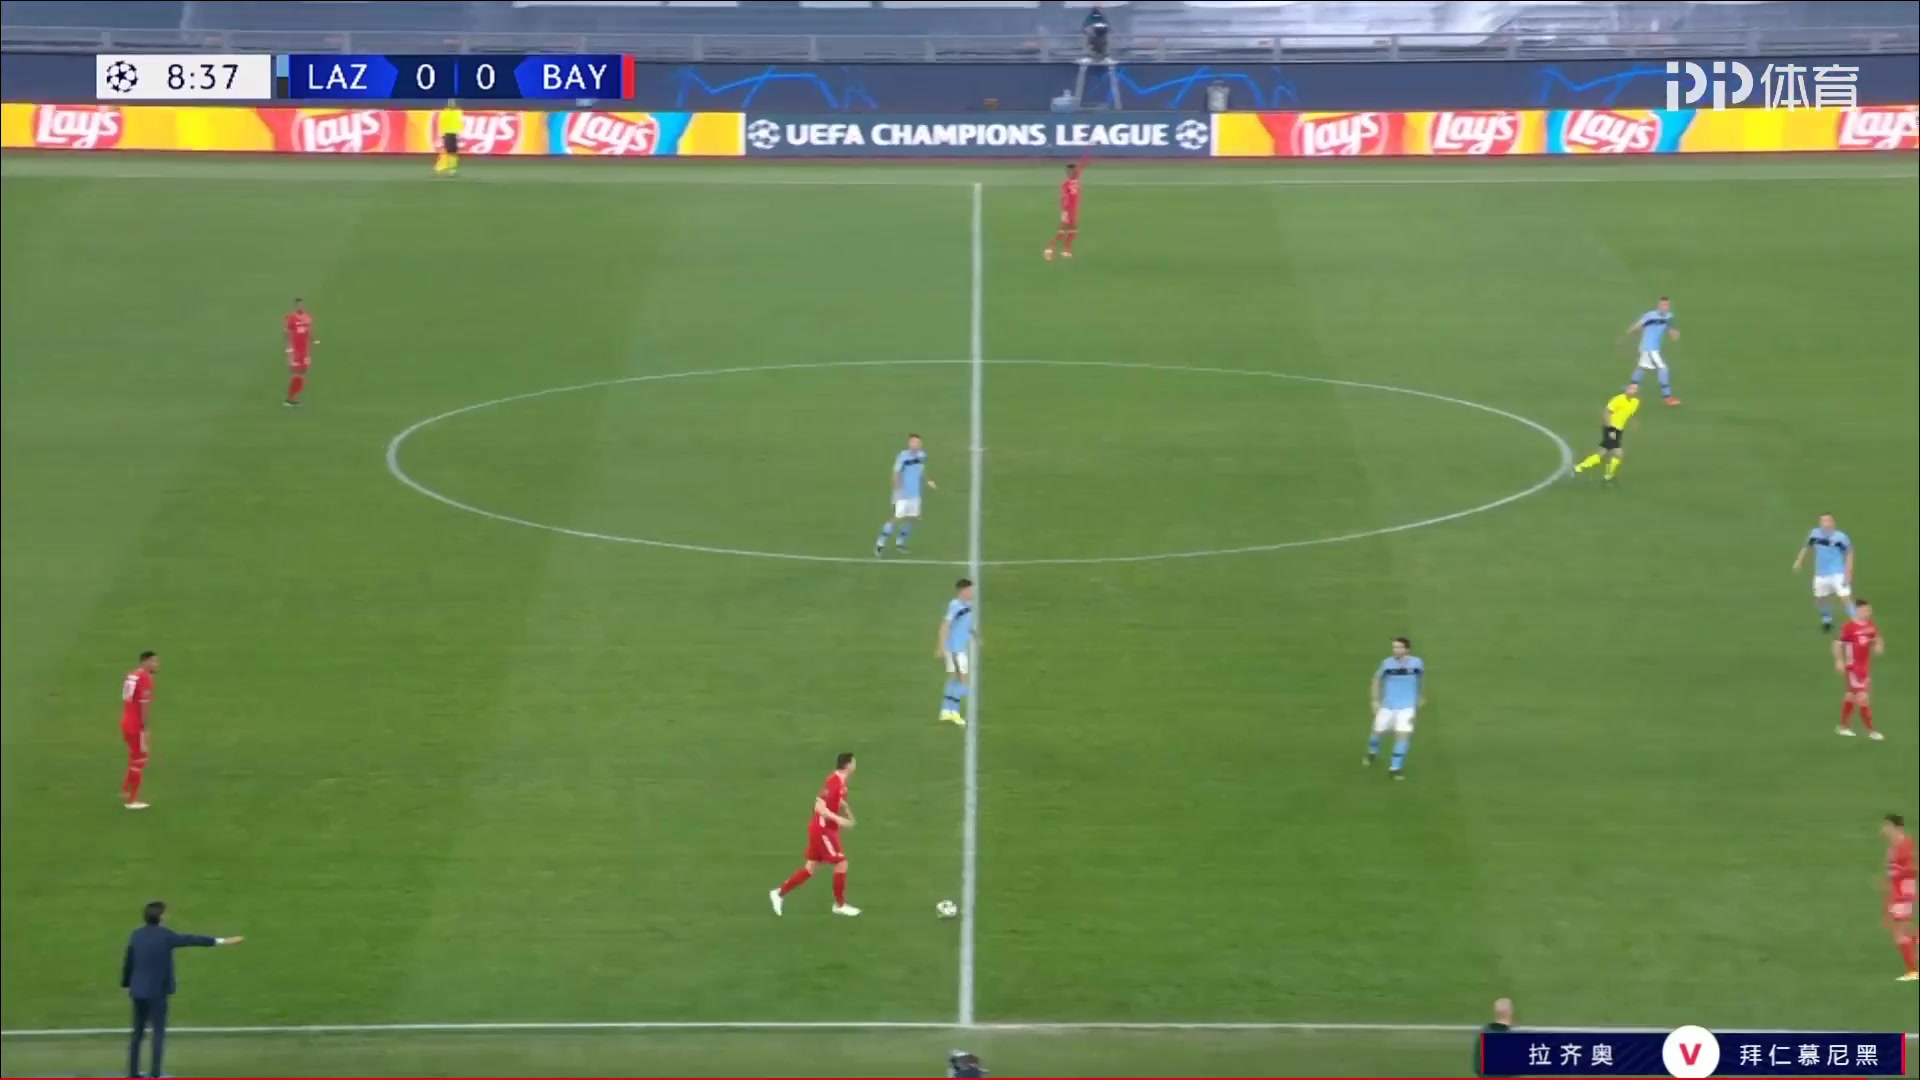 UEFA CL Lazio Vs Bayern Munchen Robert Lewandowski Goal in 9 min, Score 0:1